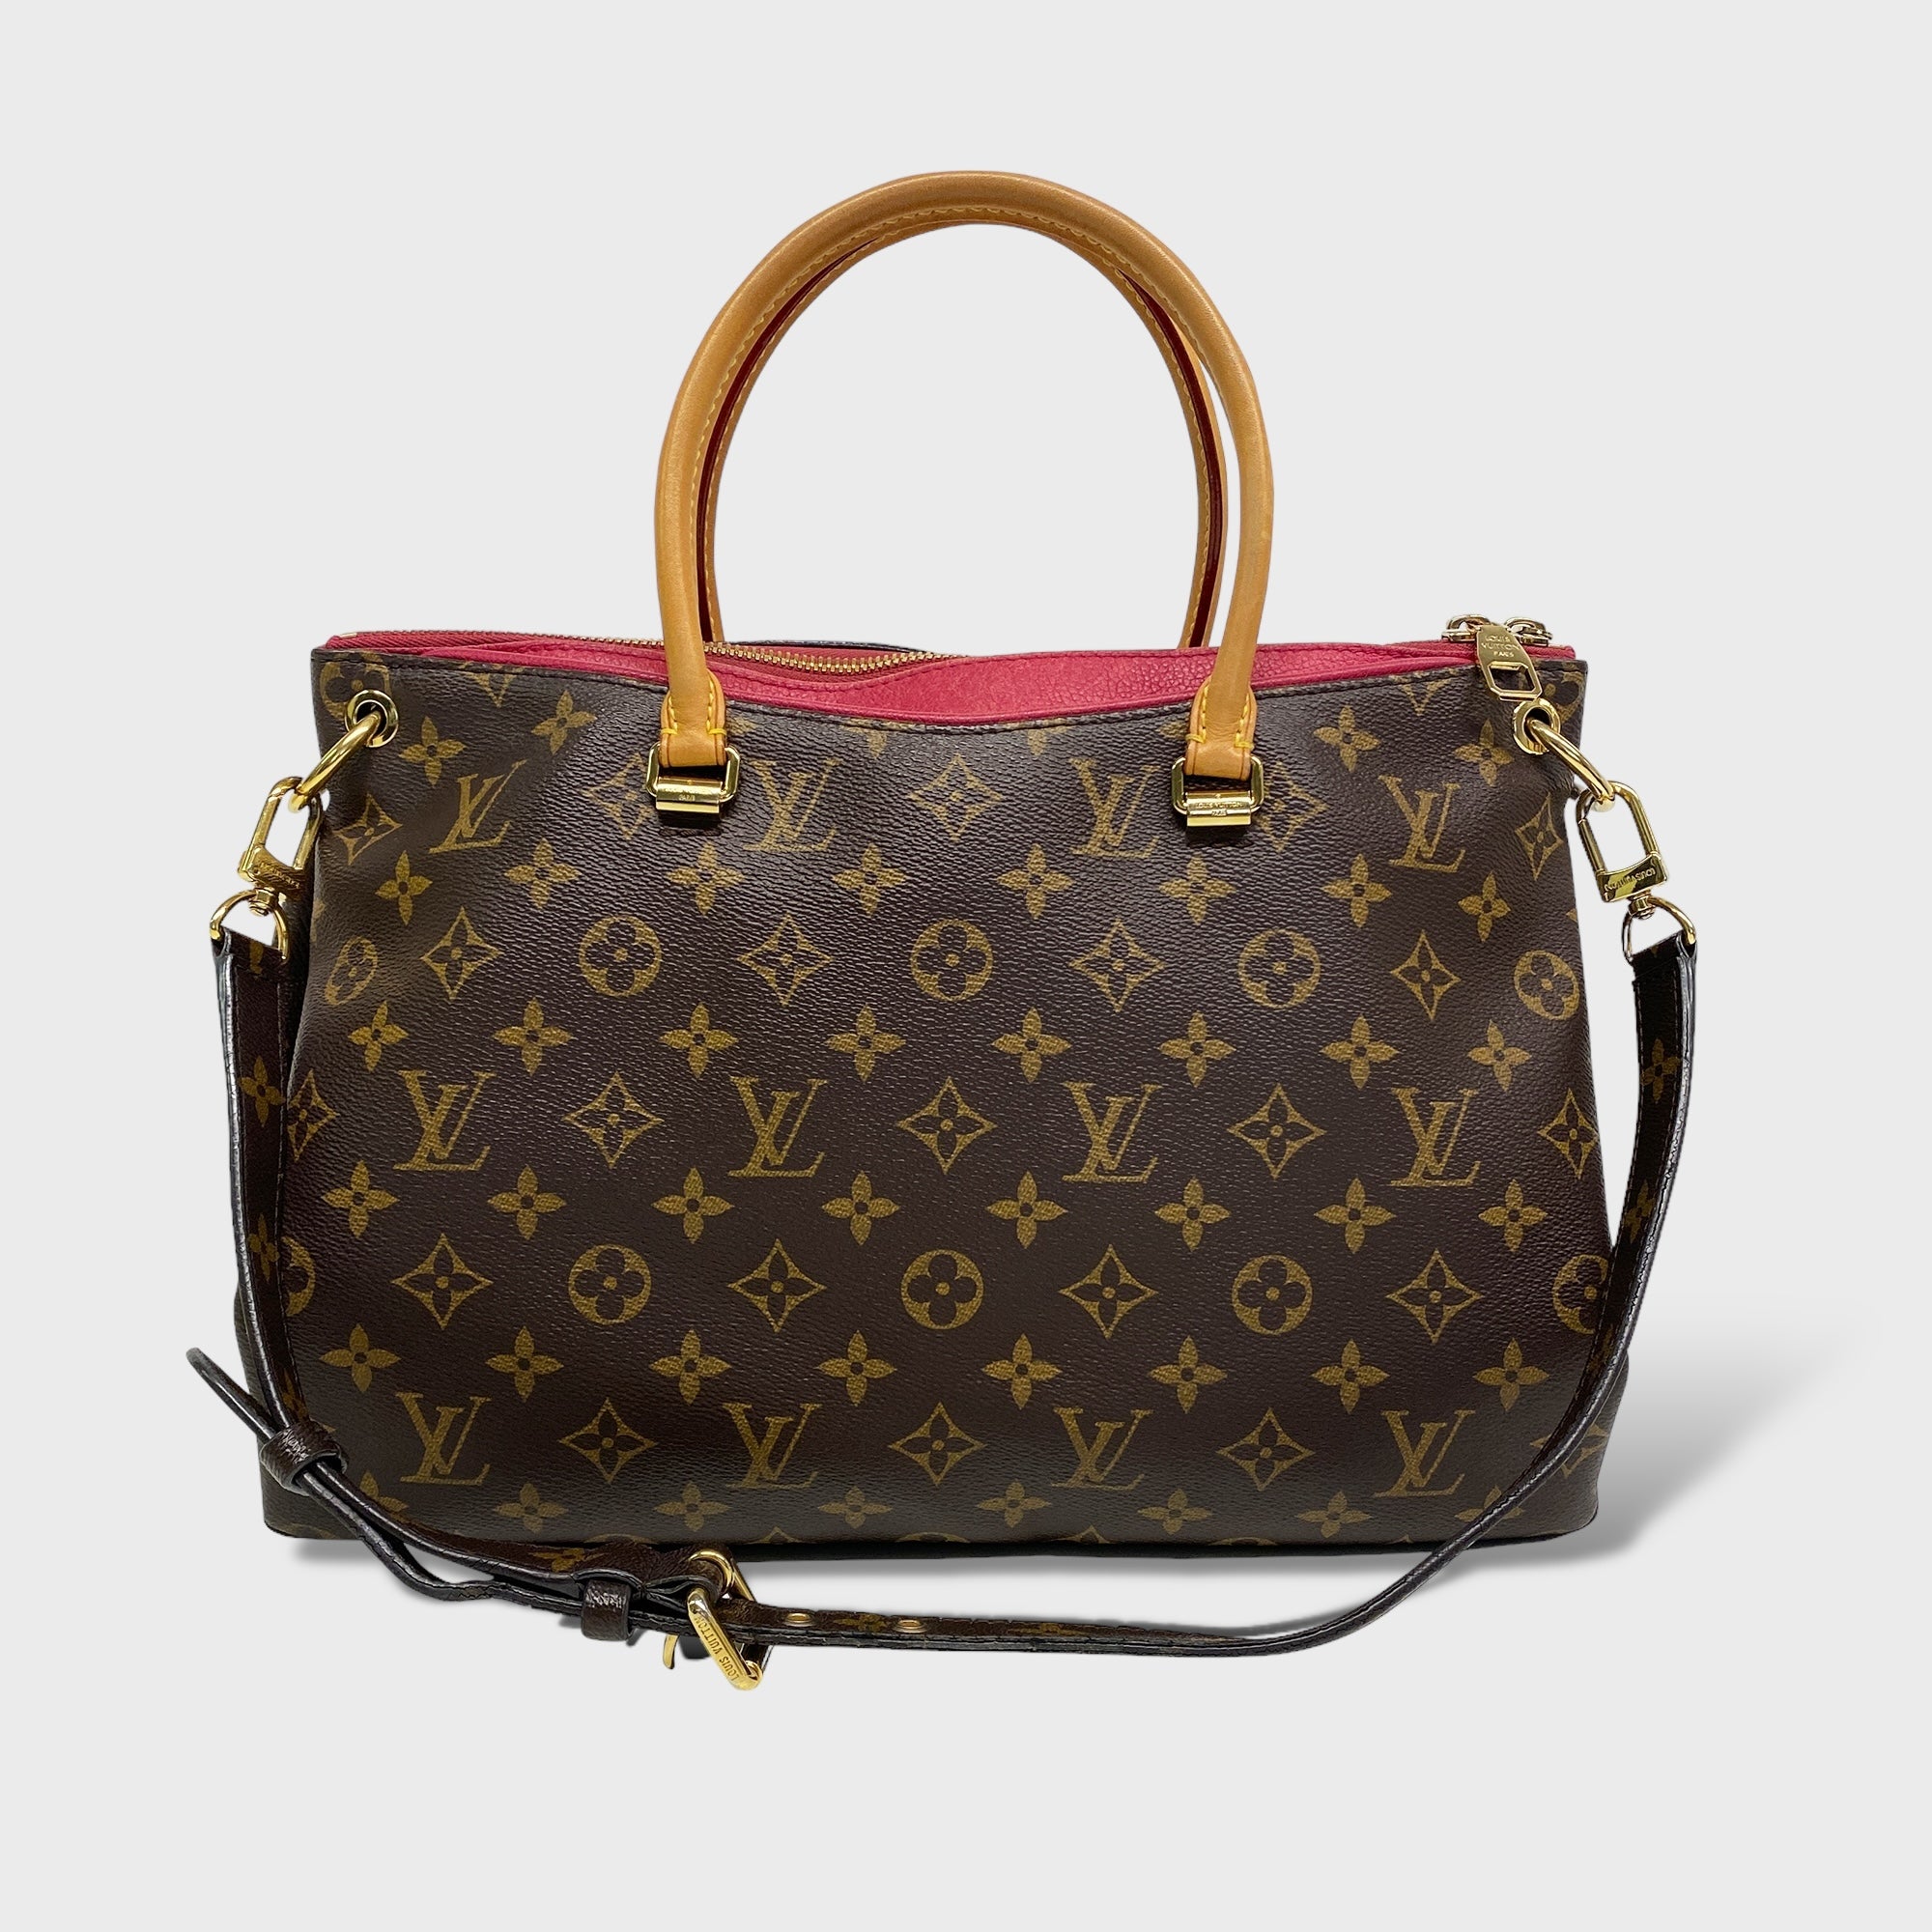 Second Hand Louis Vuitton Tasche online kaufen auf kaleaz.